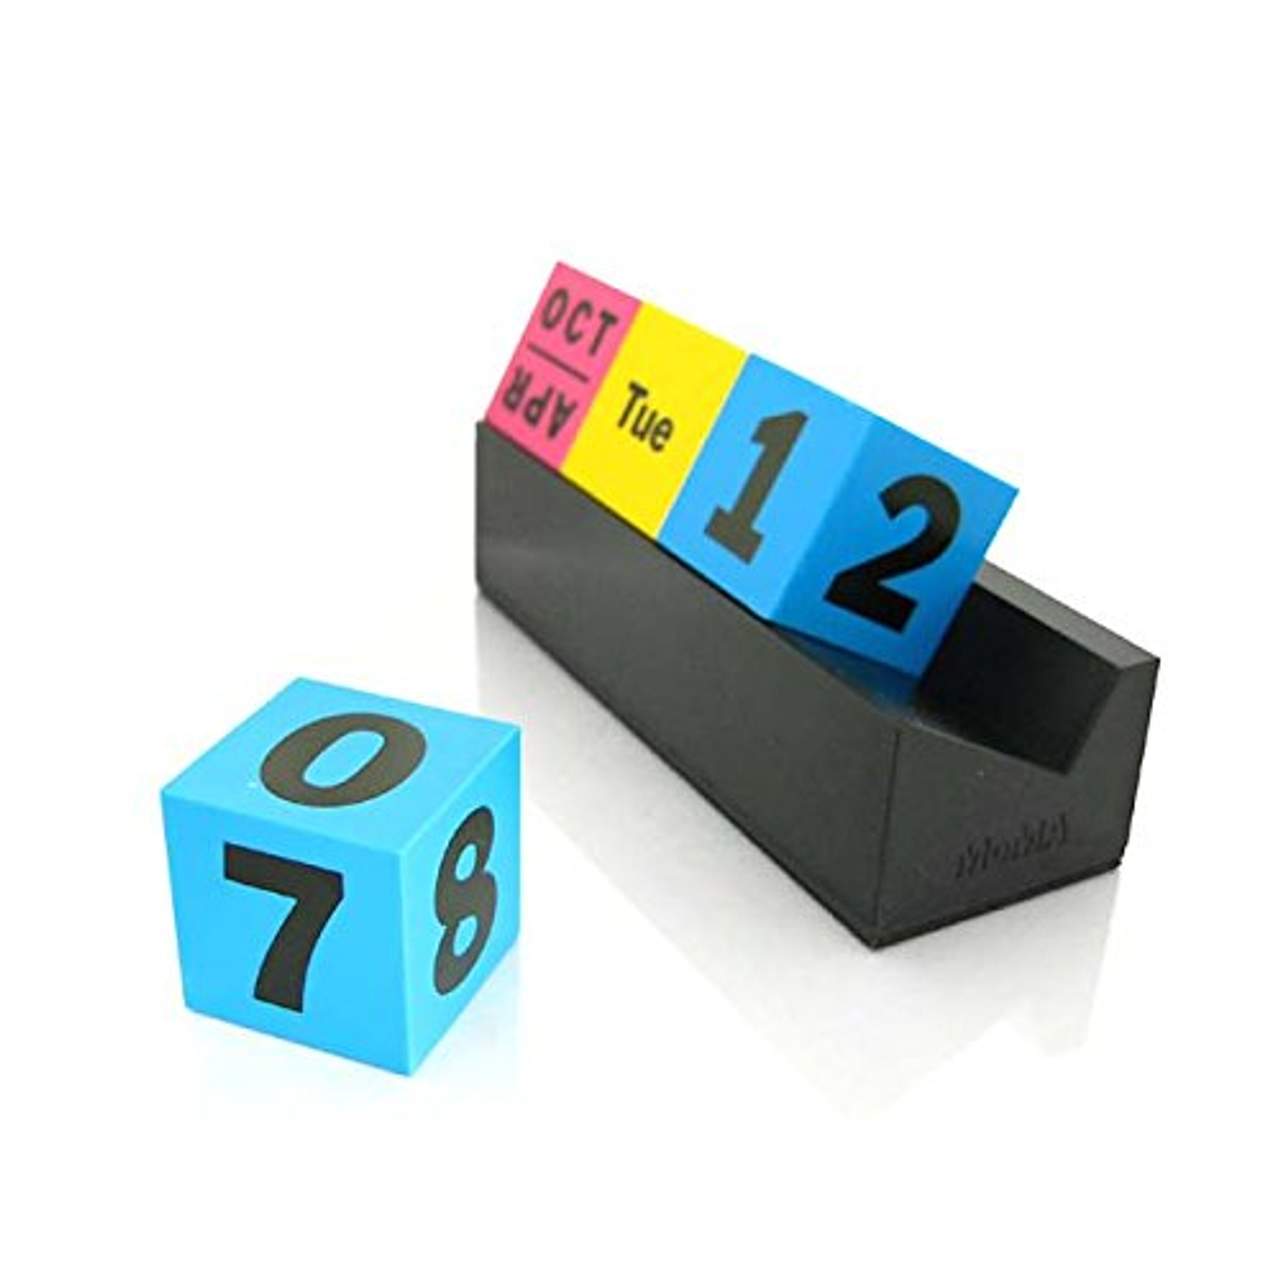 MOMA Ewiger Kalender Cubes Cymk